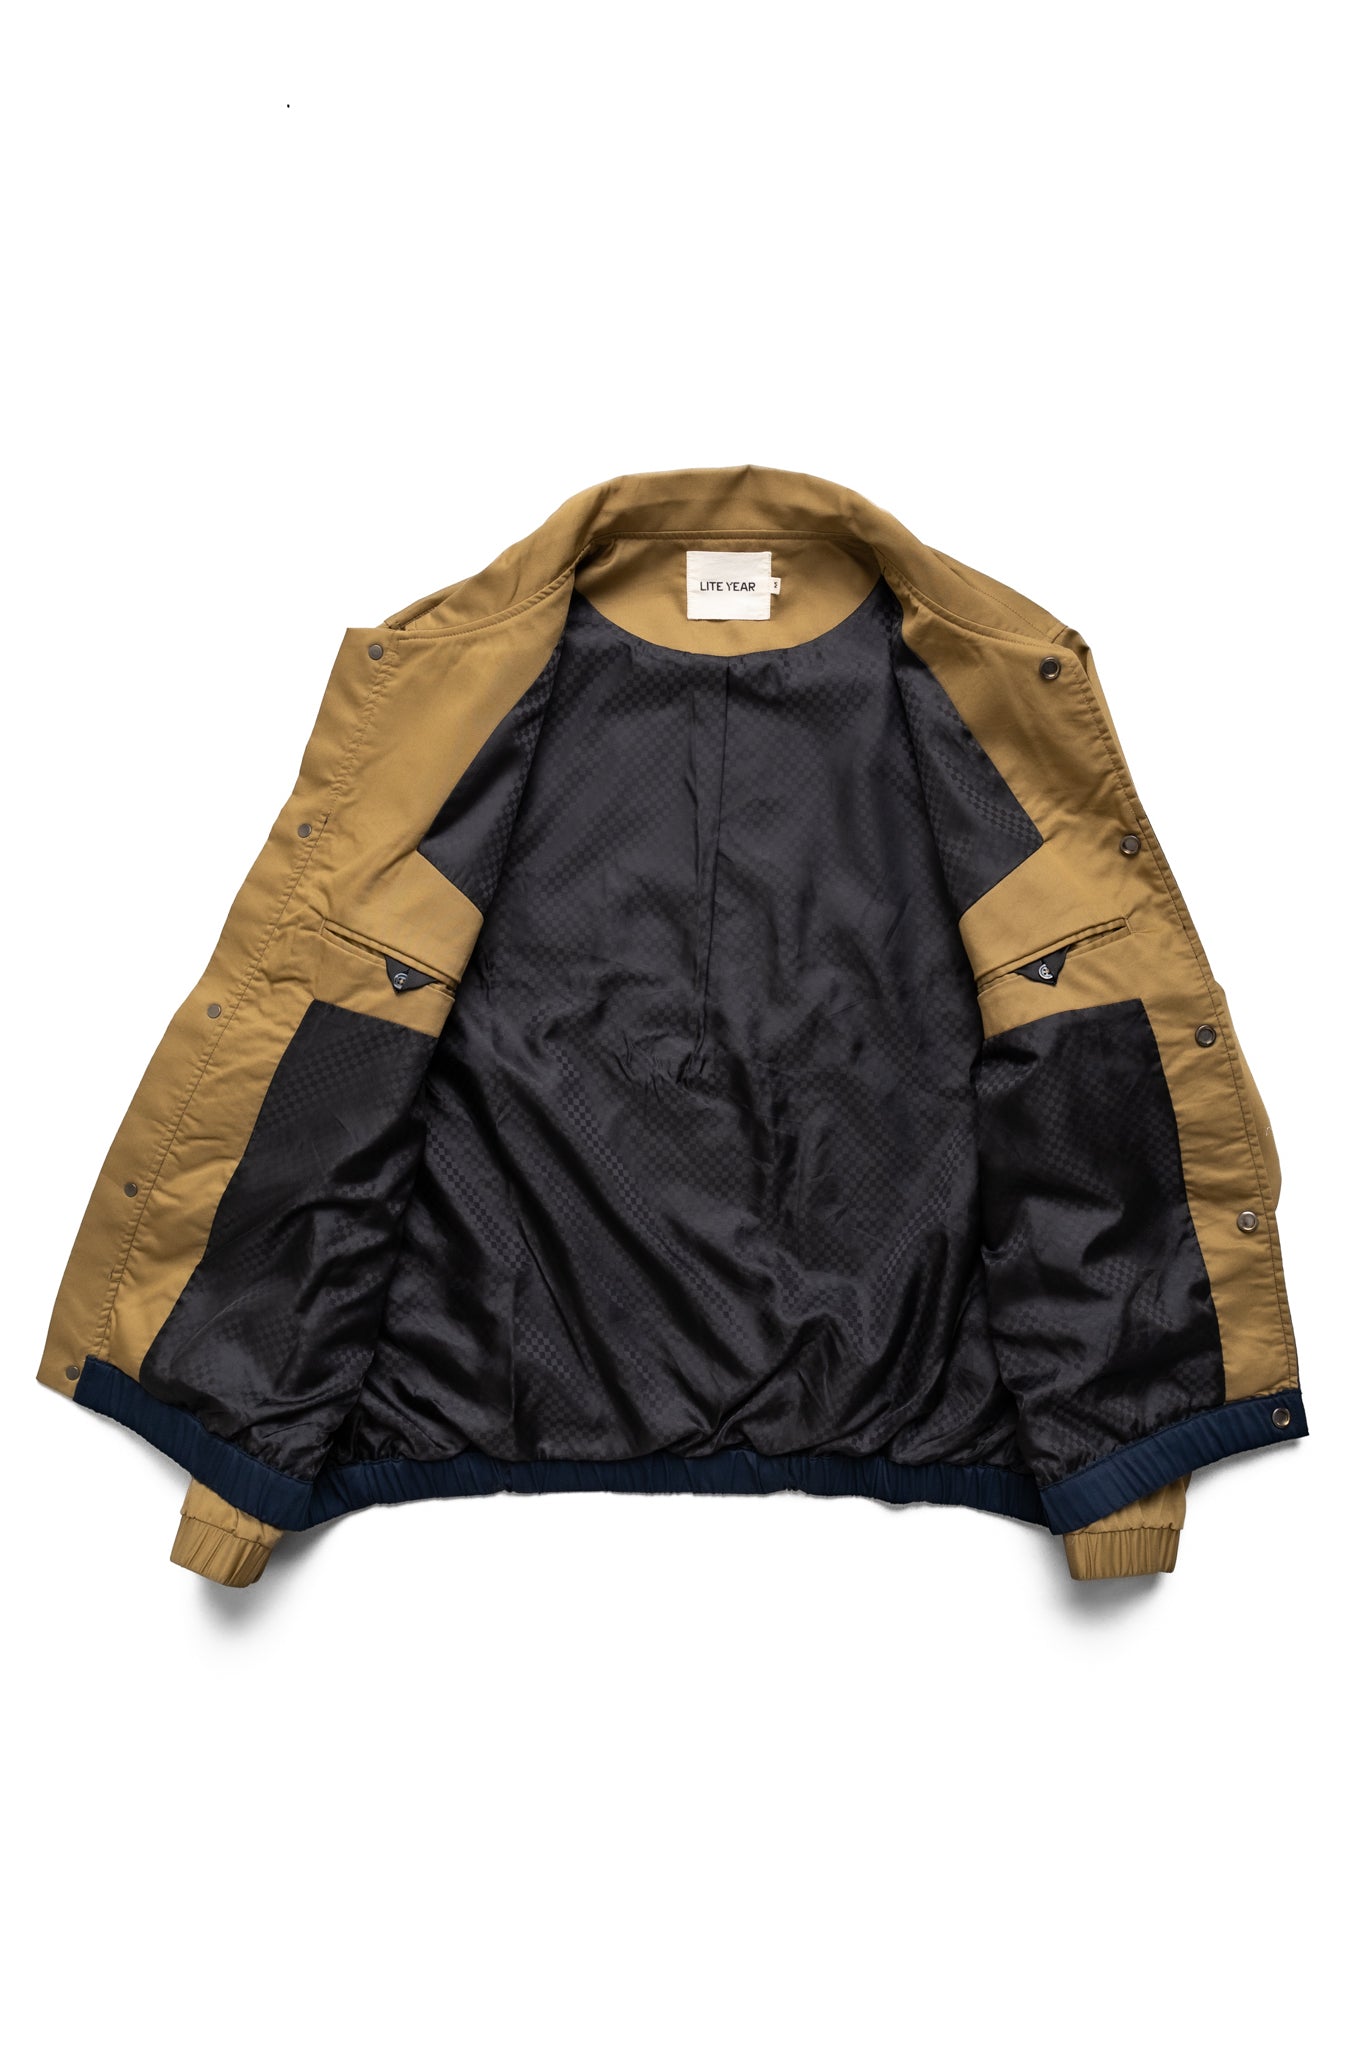 Western Jacket - Khaki/Navy